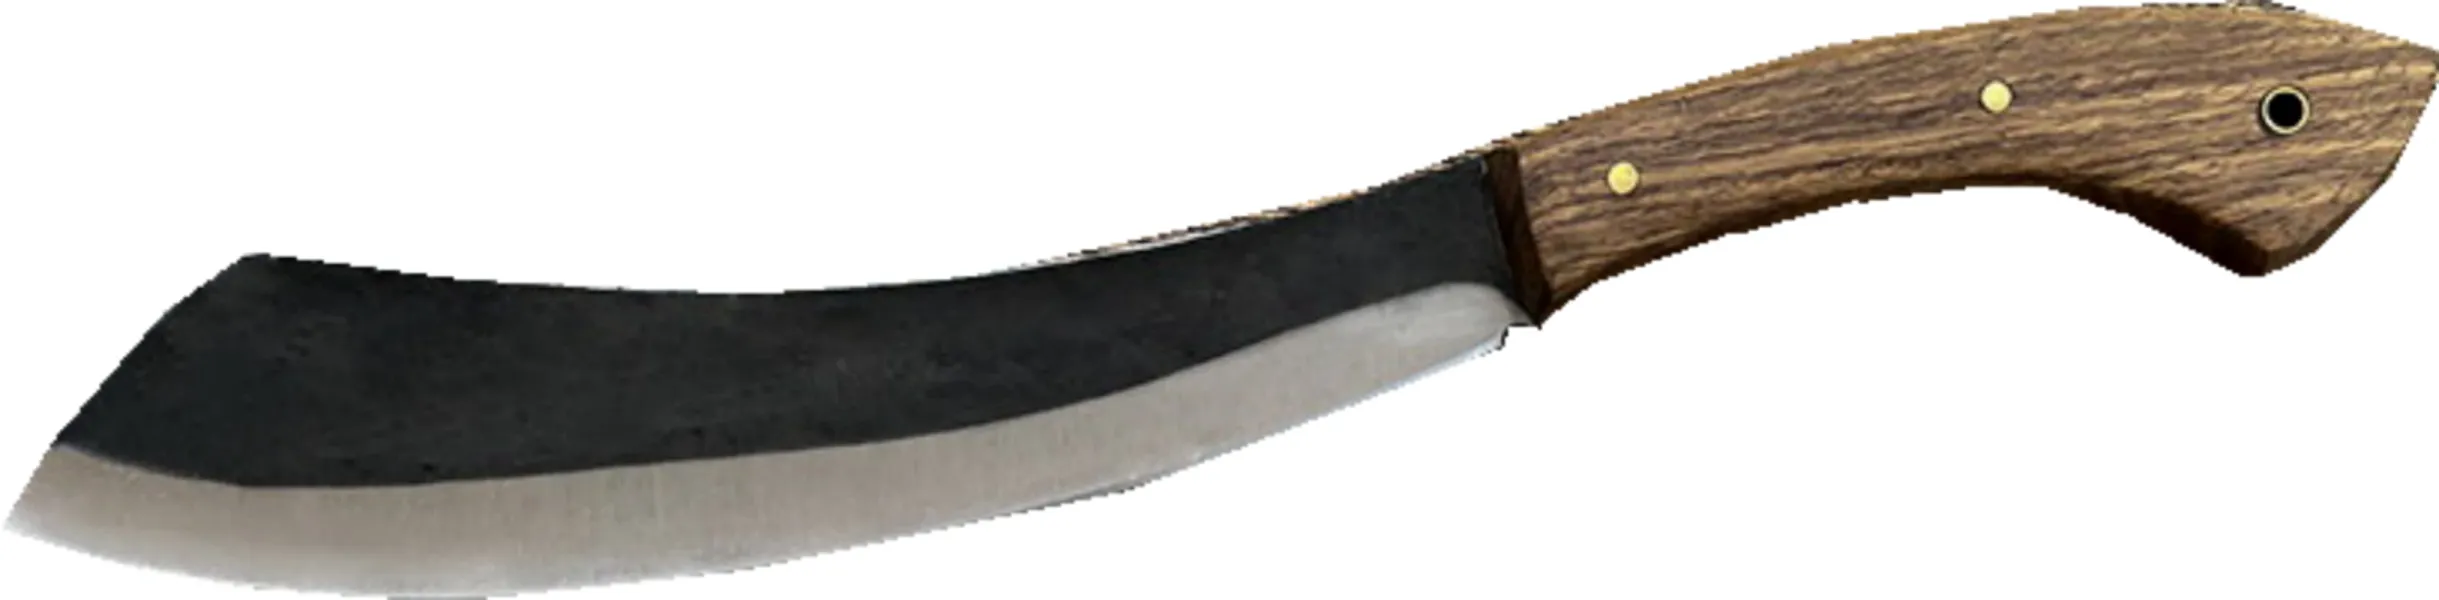 ナイフの自己防衛屋外サバイバルナイフシャープハイハードフィールドサバイバル戦術は、ストレートナイフブレードの絶妙で耐久性のあるものを運ぶ